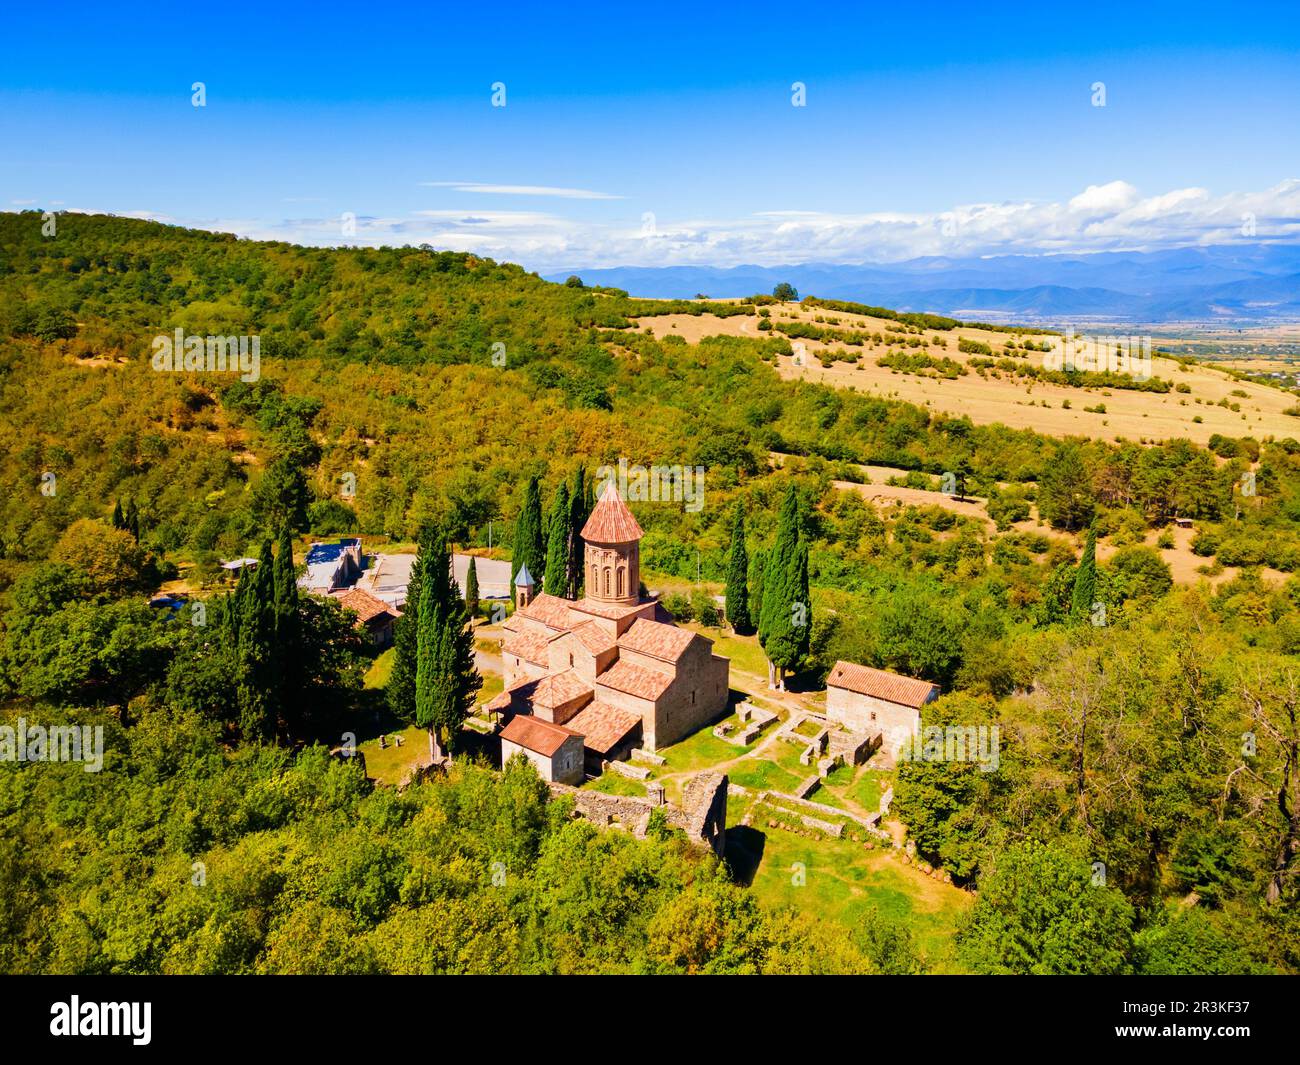 Vista panoramica aerea del complesso del Monastero di Ikalto a Kakheti. Kakheti è una regione della Georgia orientale con Telavi come capitale. Foto Stock